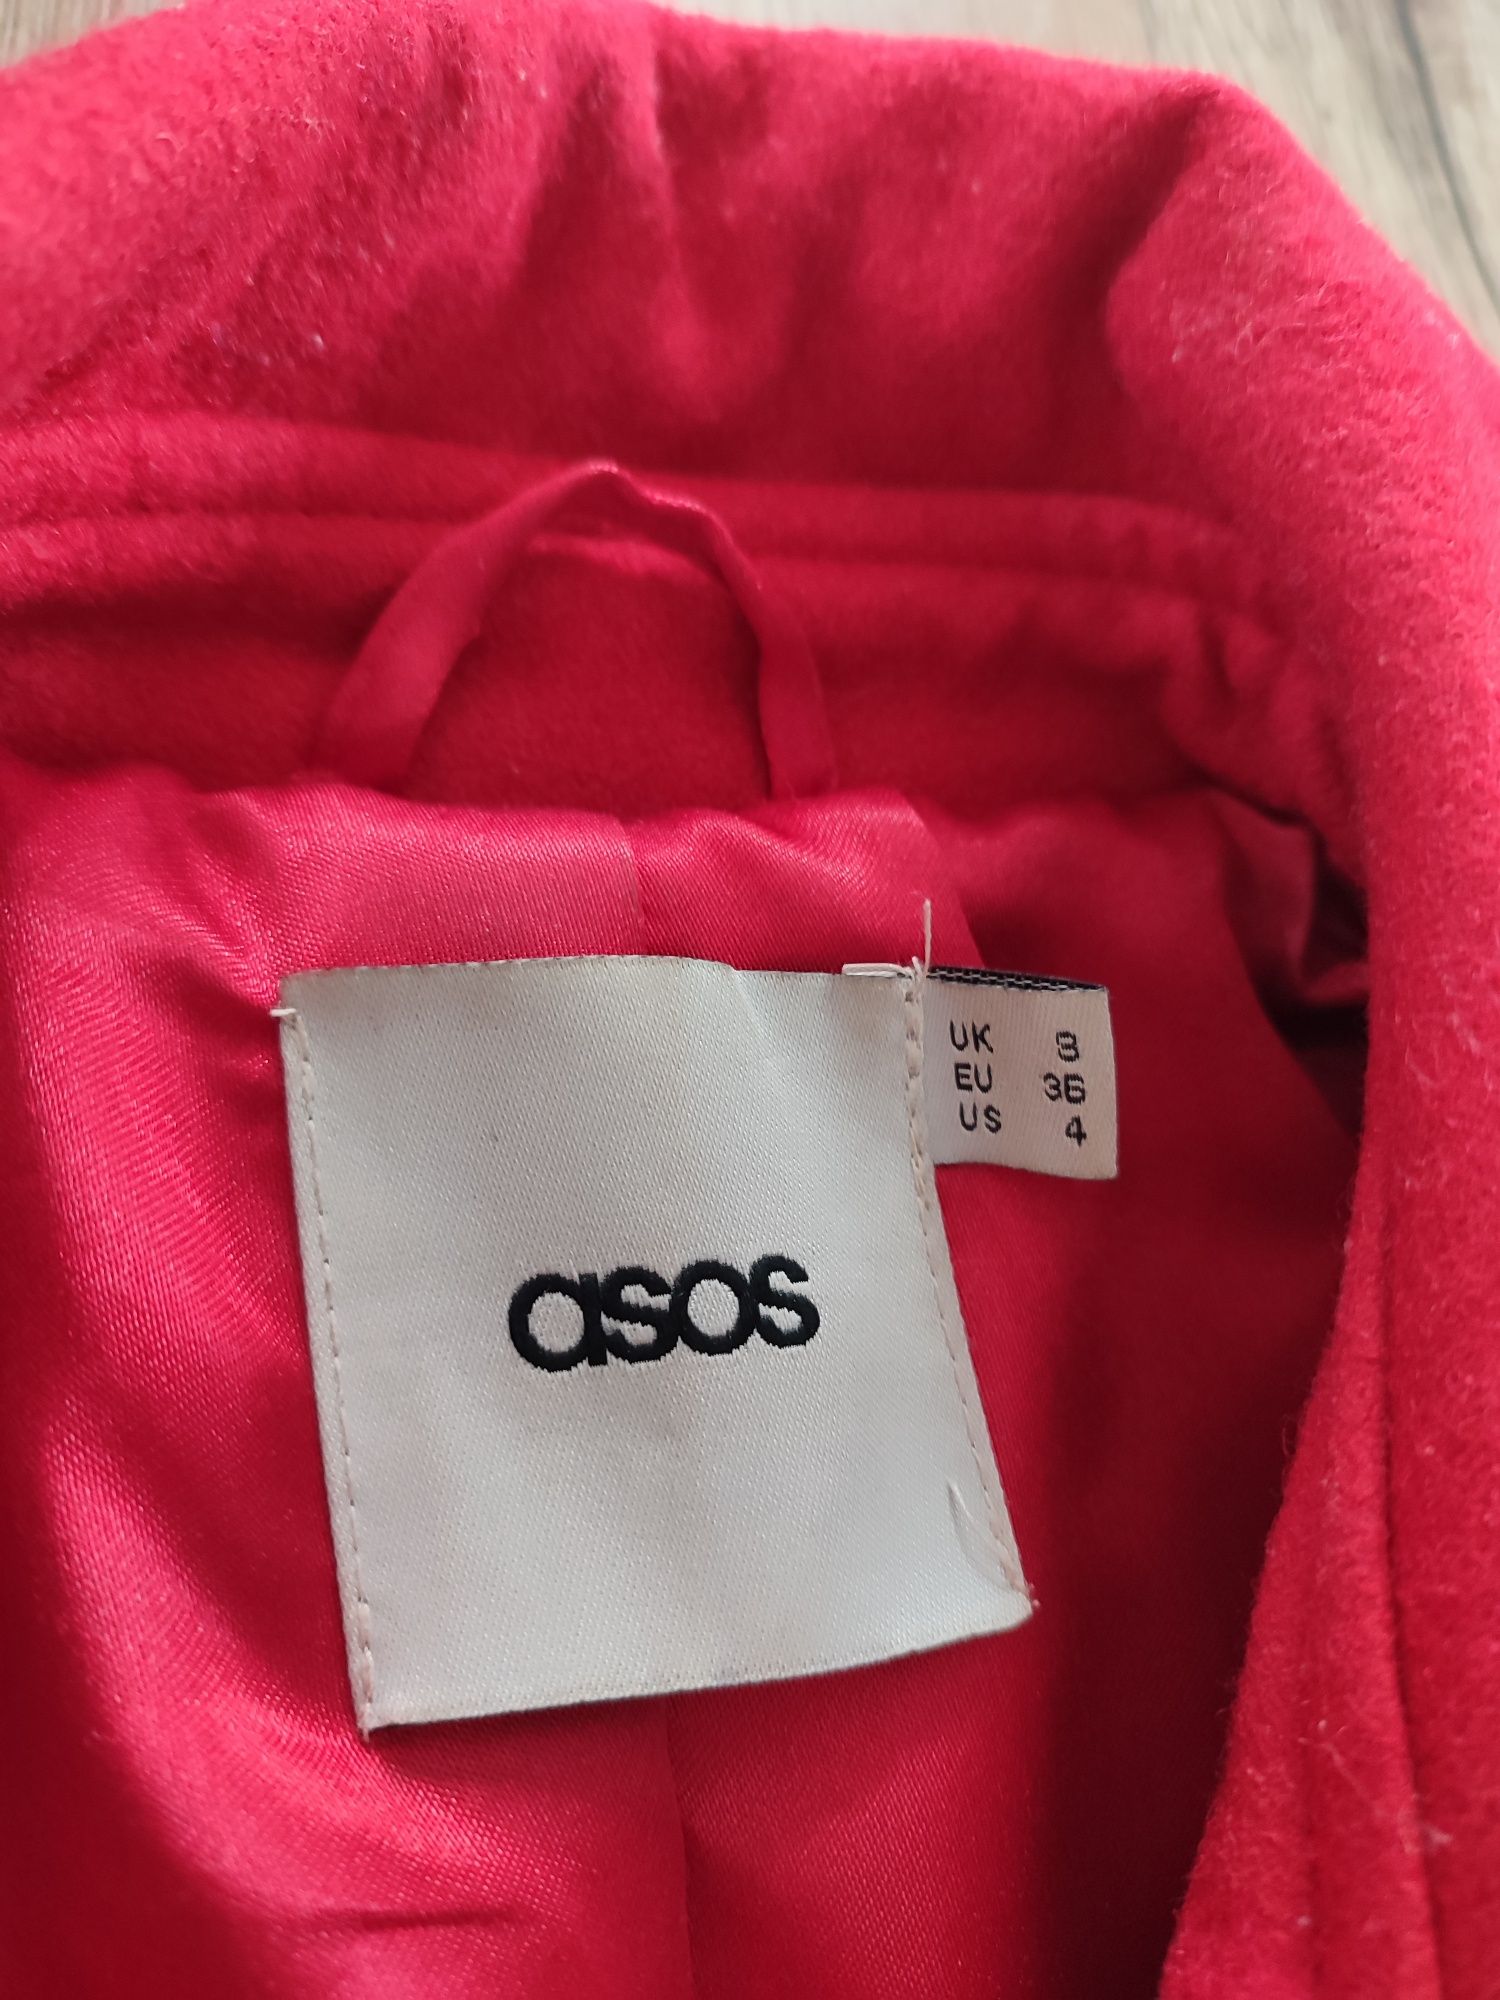 ASOS wełniany płaszcz zimowy jesienny czerwony 36 S taliowany przewiqz